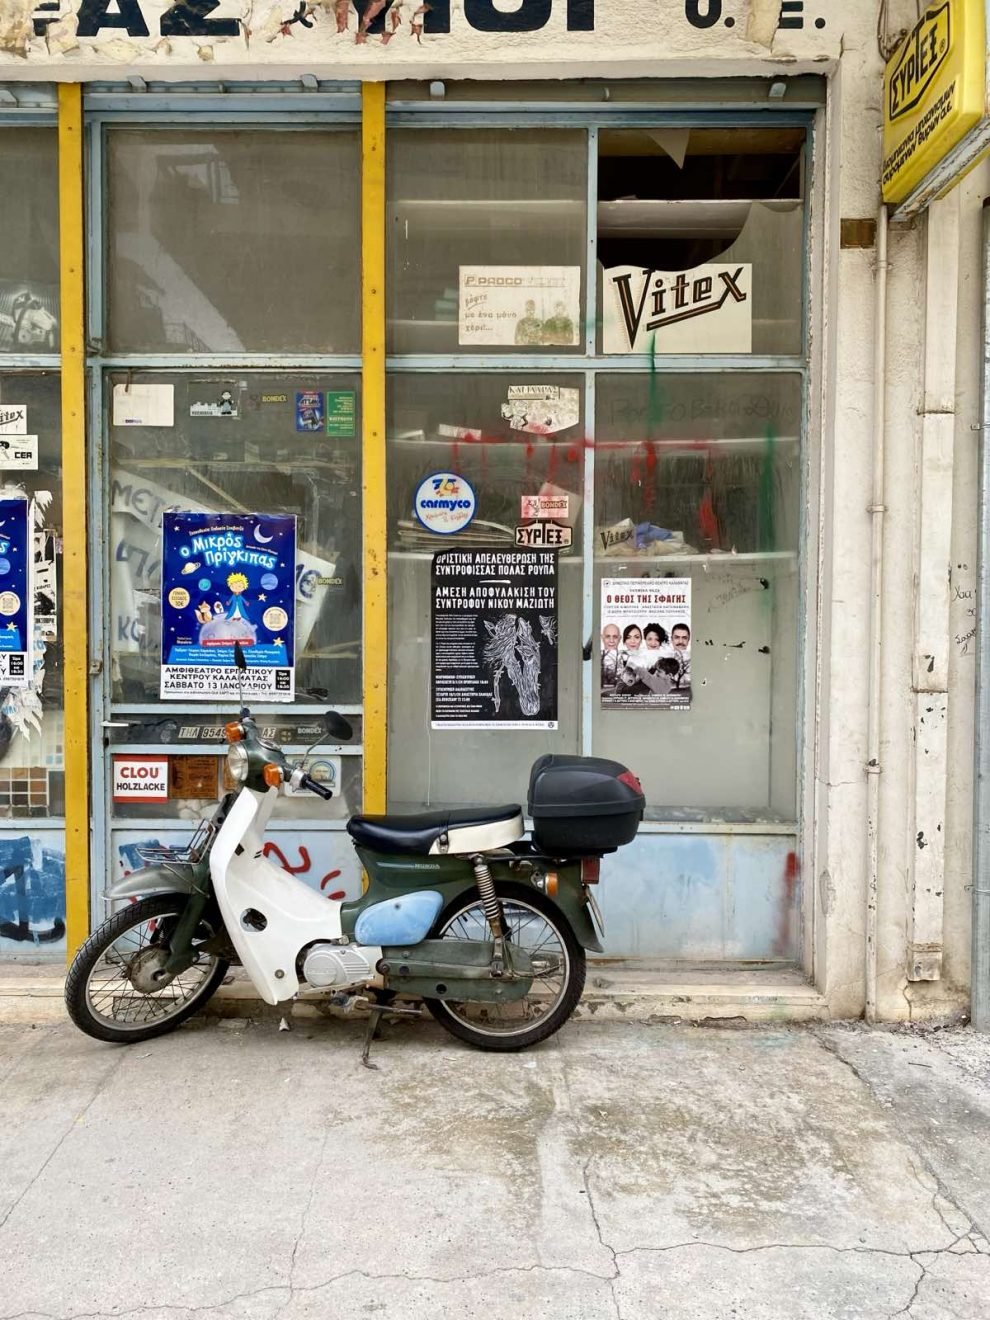 Σκόπελος: Απαγόρευση τοποθέτησης πινακίδων ή διαφημιστικών χωρίς την έγκριση του Δήμου